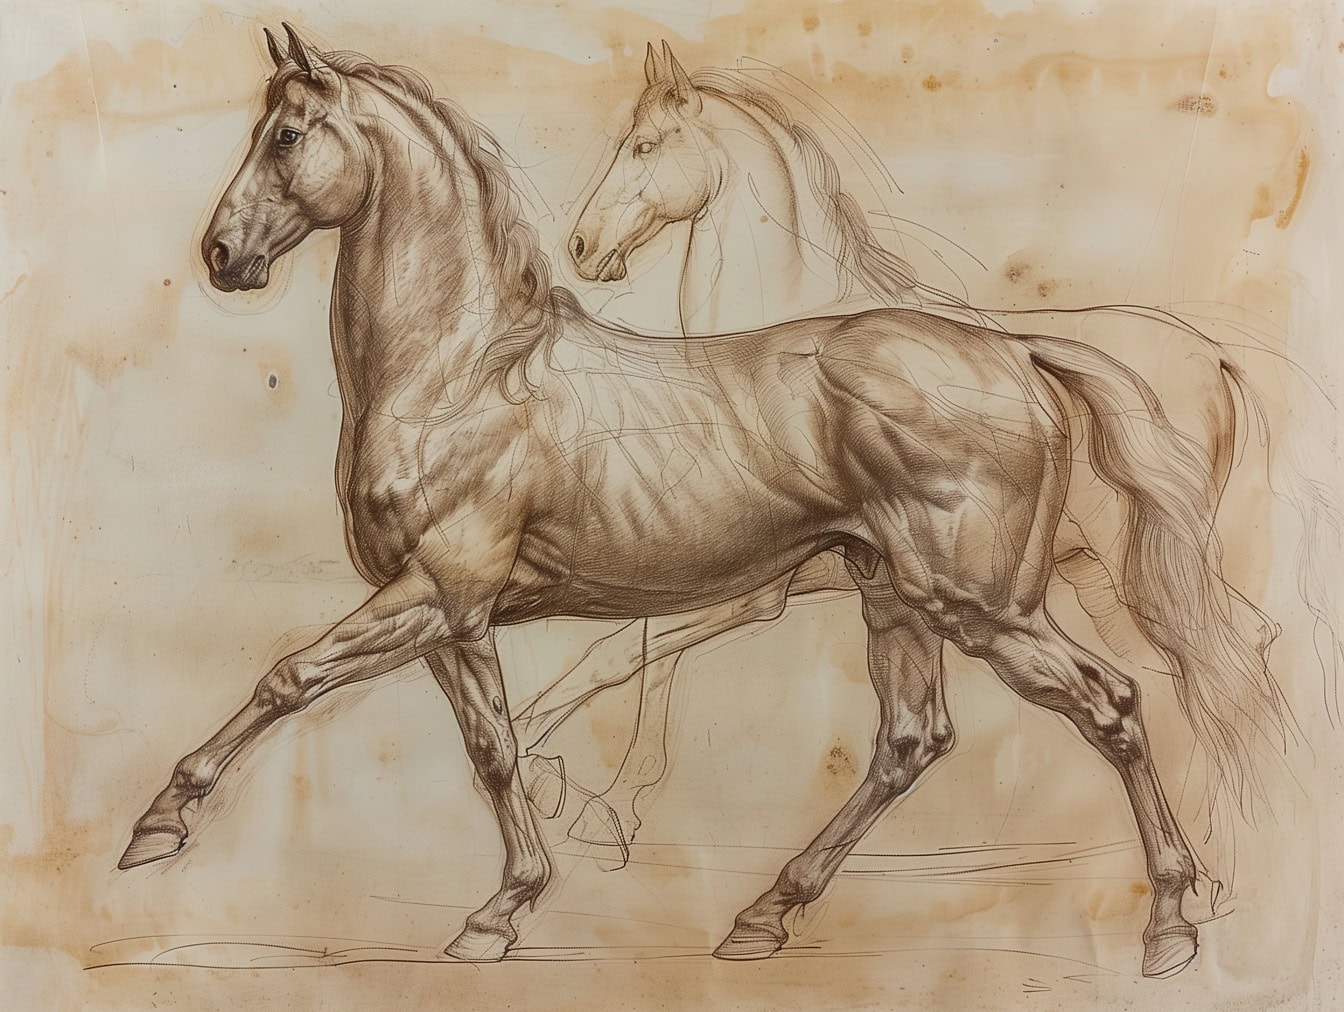 Teckning av två hästar på gammalt papper, hingsten framför är klar medan hästen i bakgrunden fortfarande är en fungerande skiss